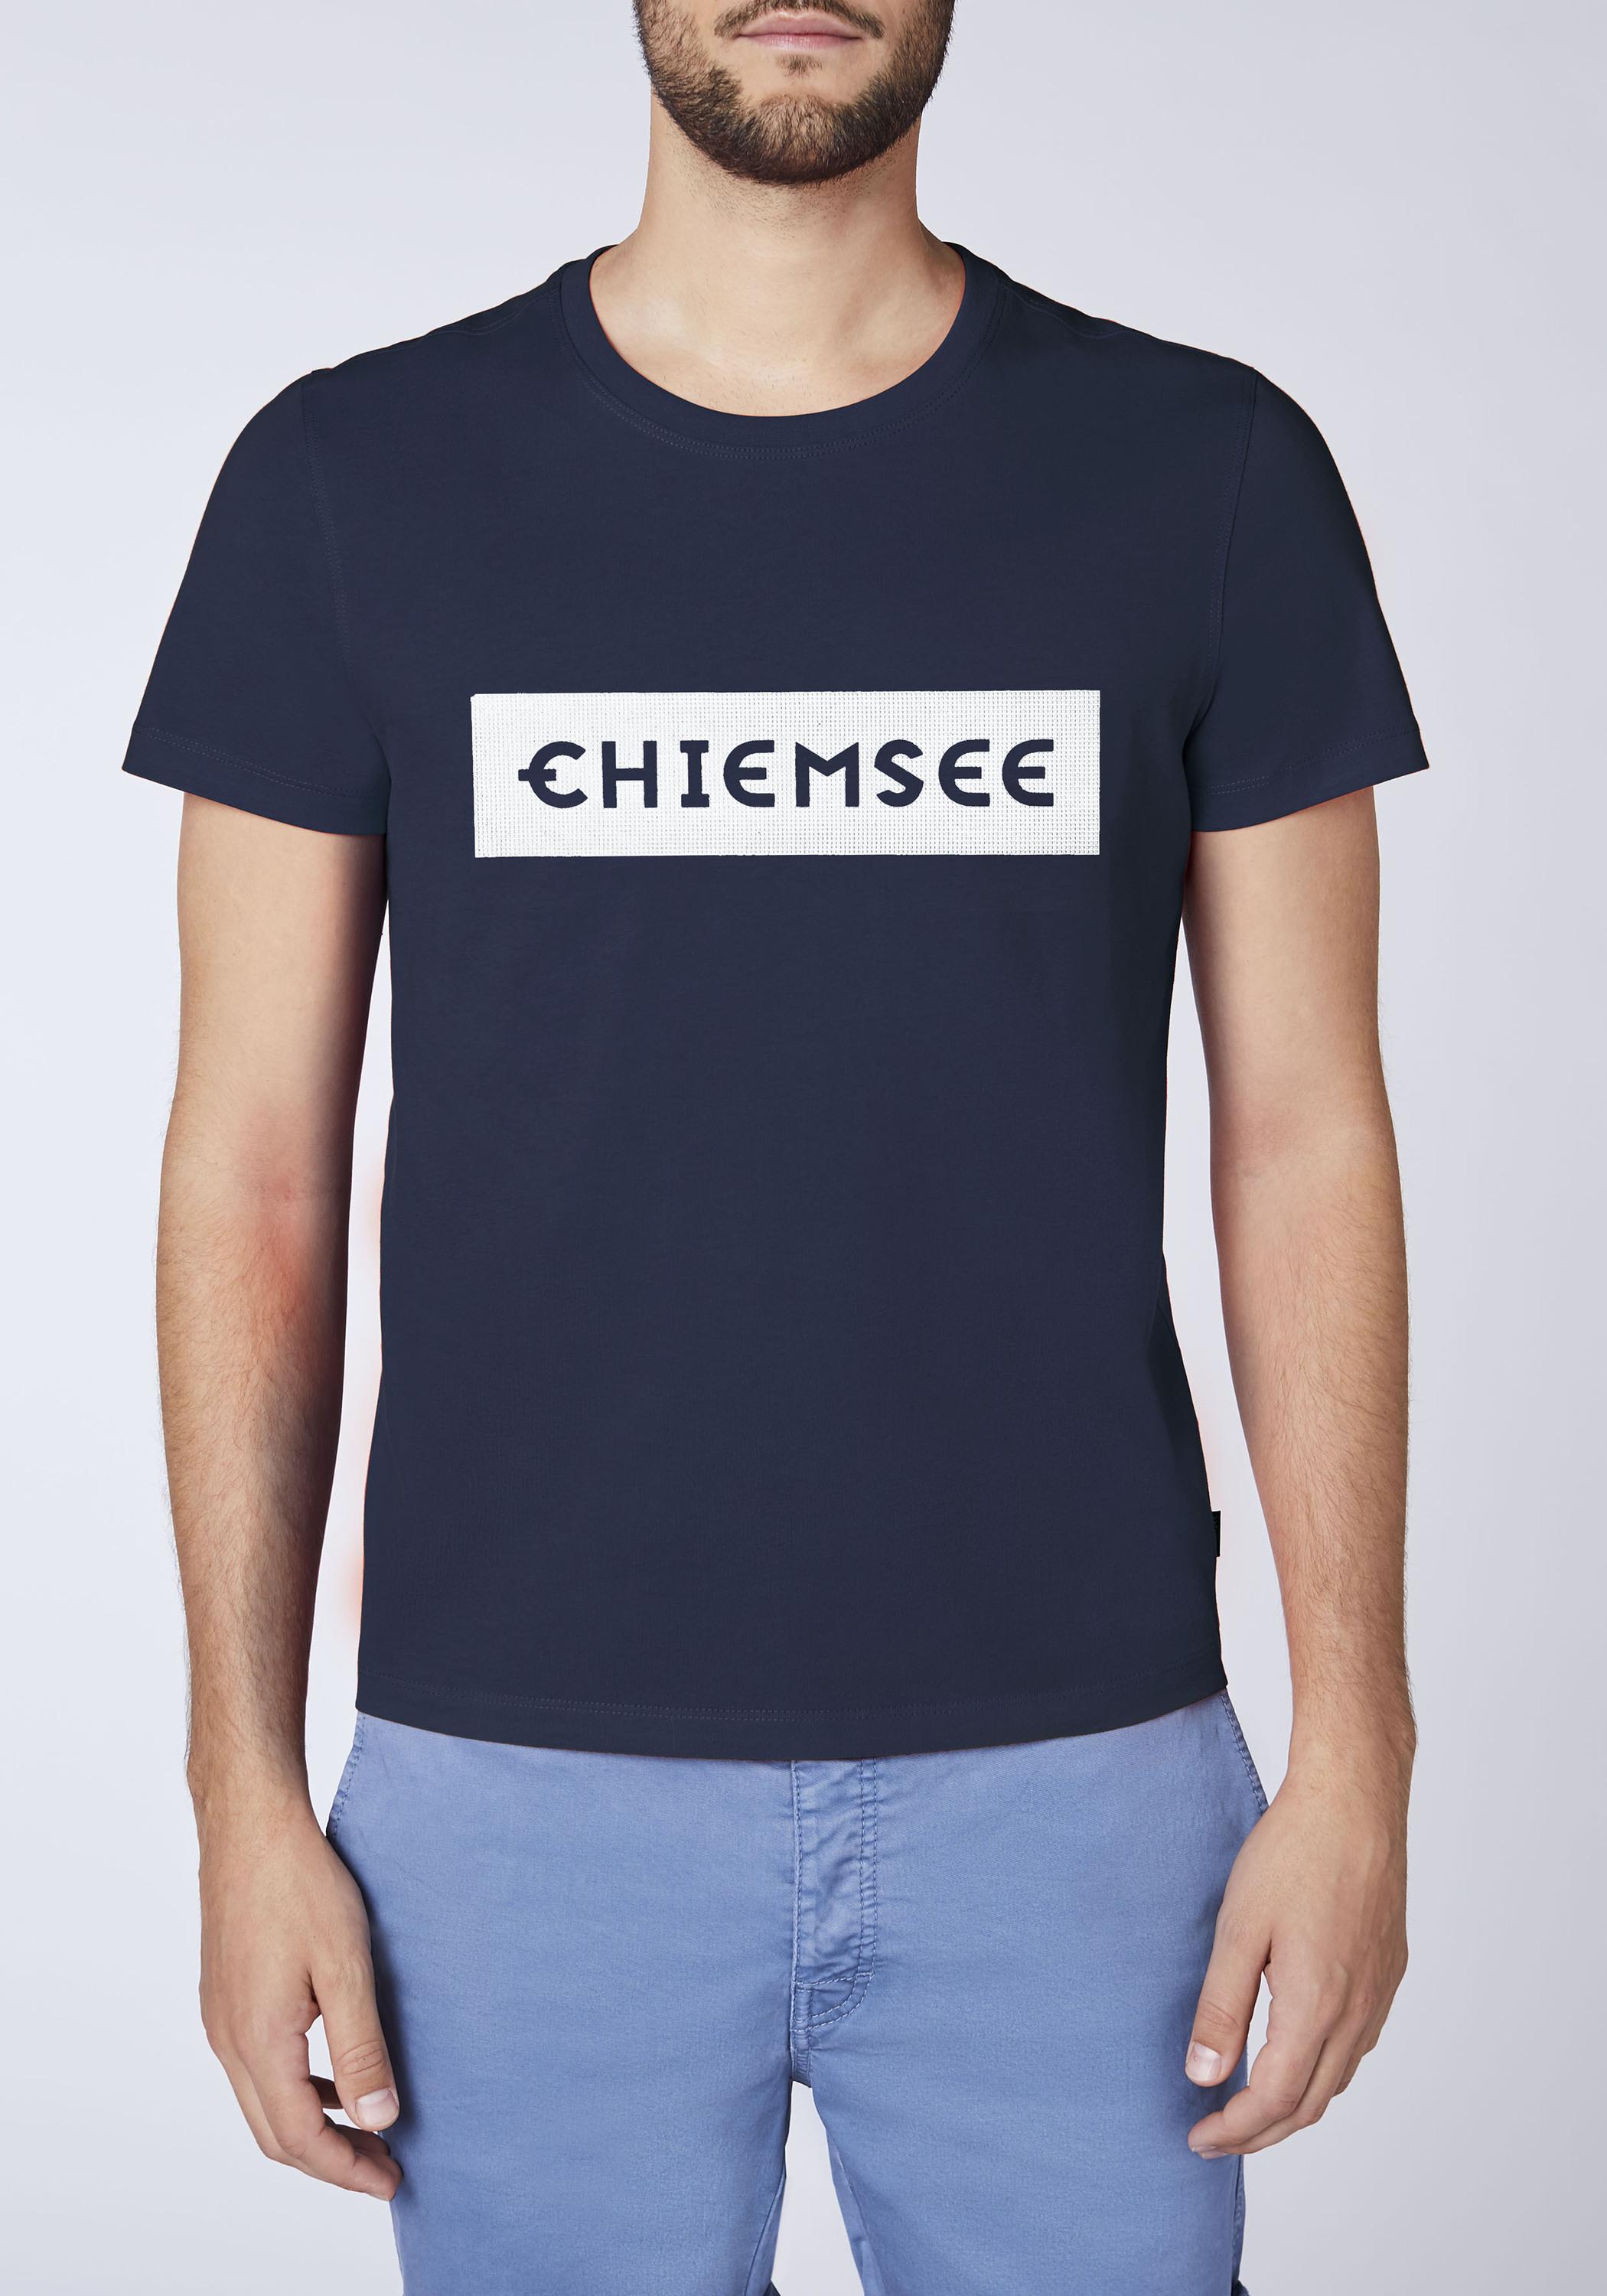 kaufen Herren Chiemsee Blue/Wht Dk T-Shirt von SportScheck T-Shirt Dif Online Shop im